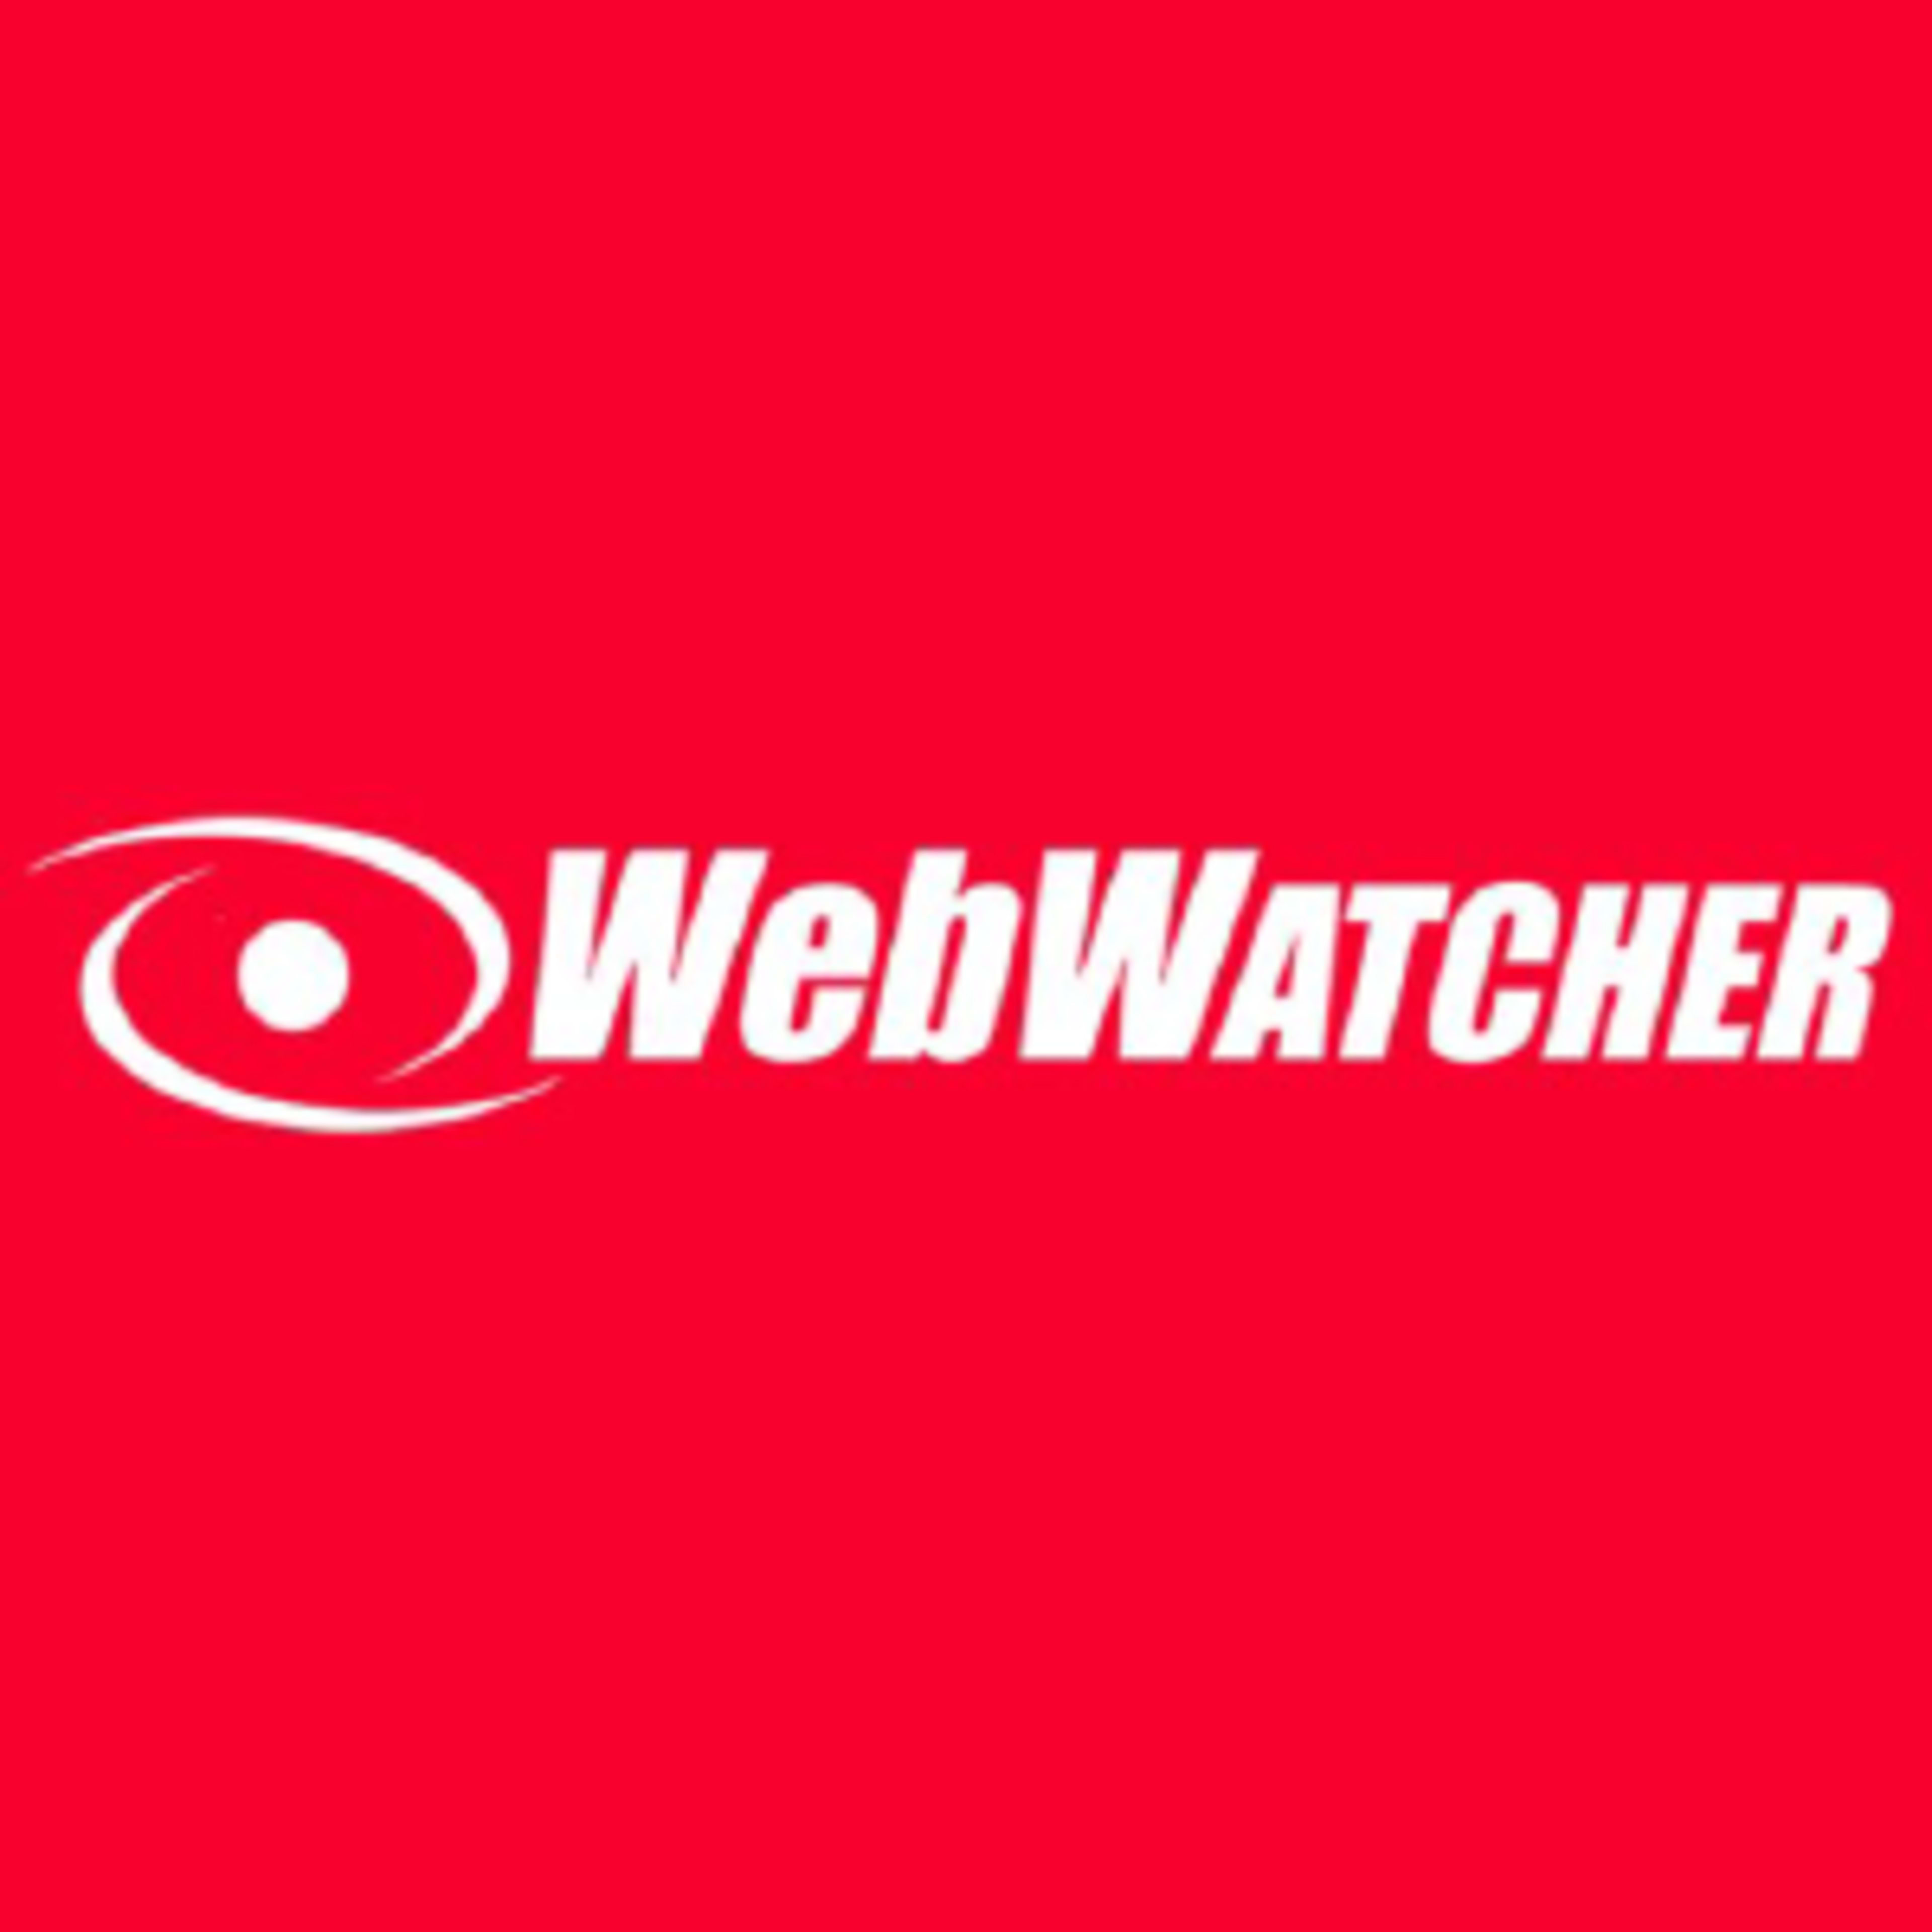 WebWatcherCode